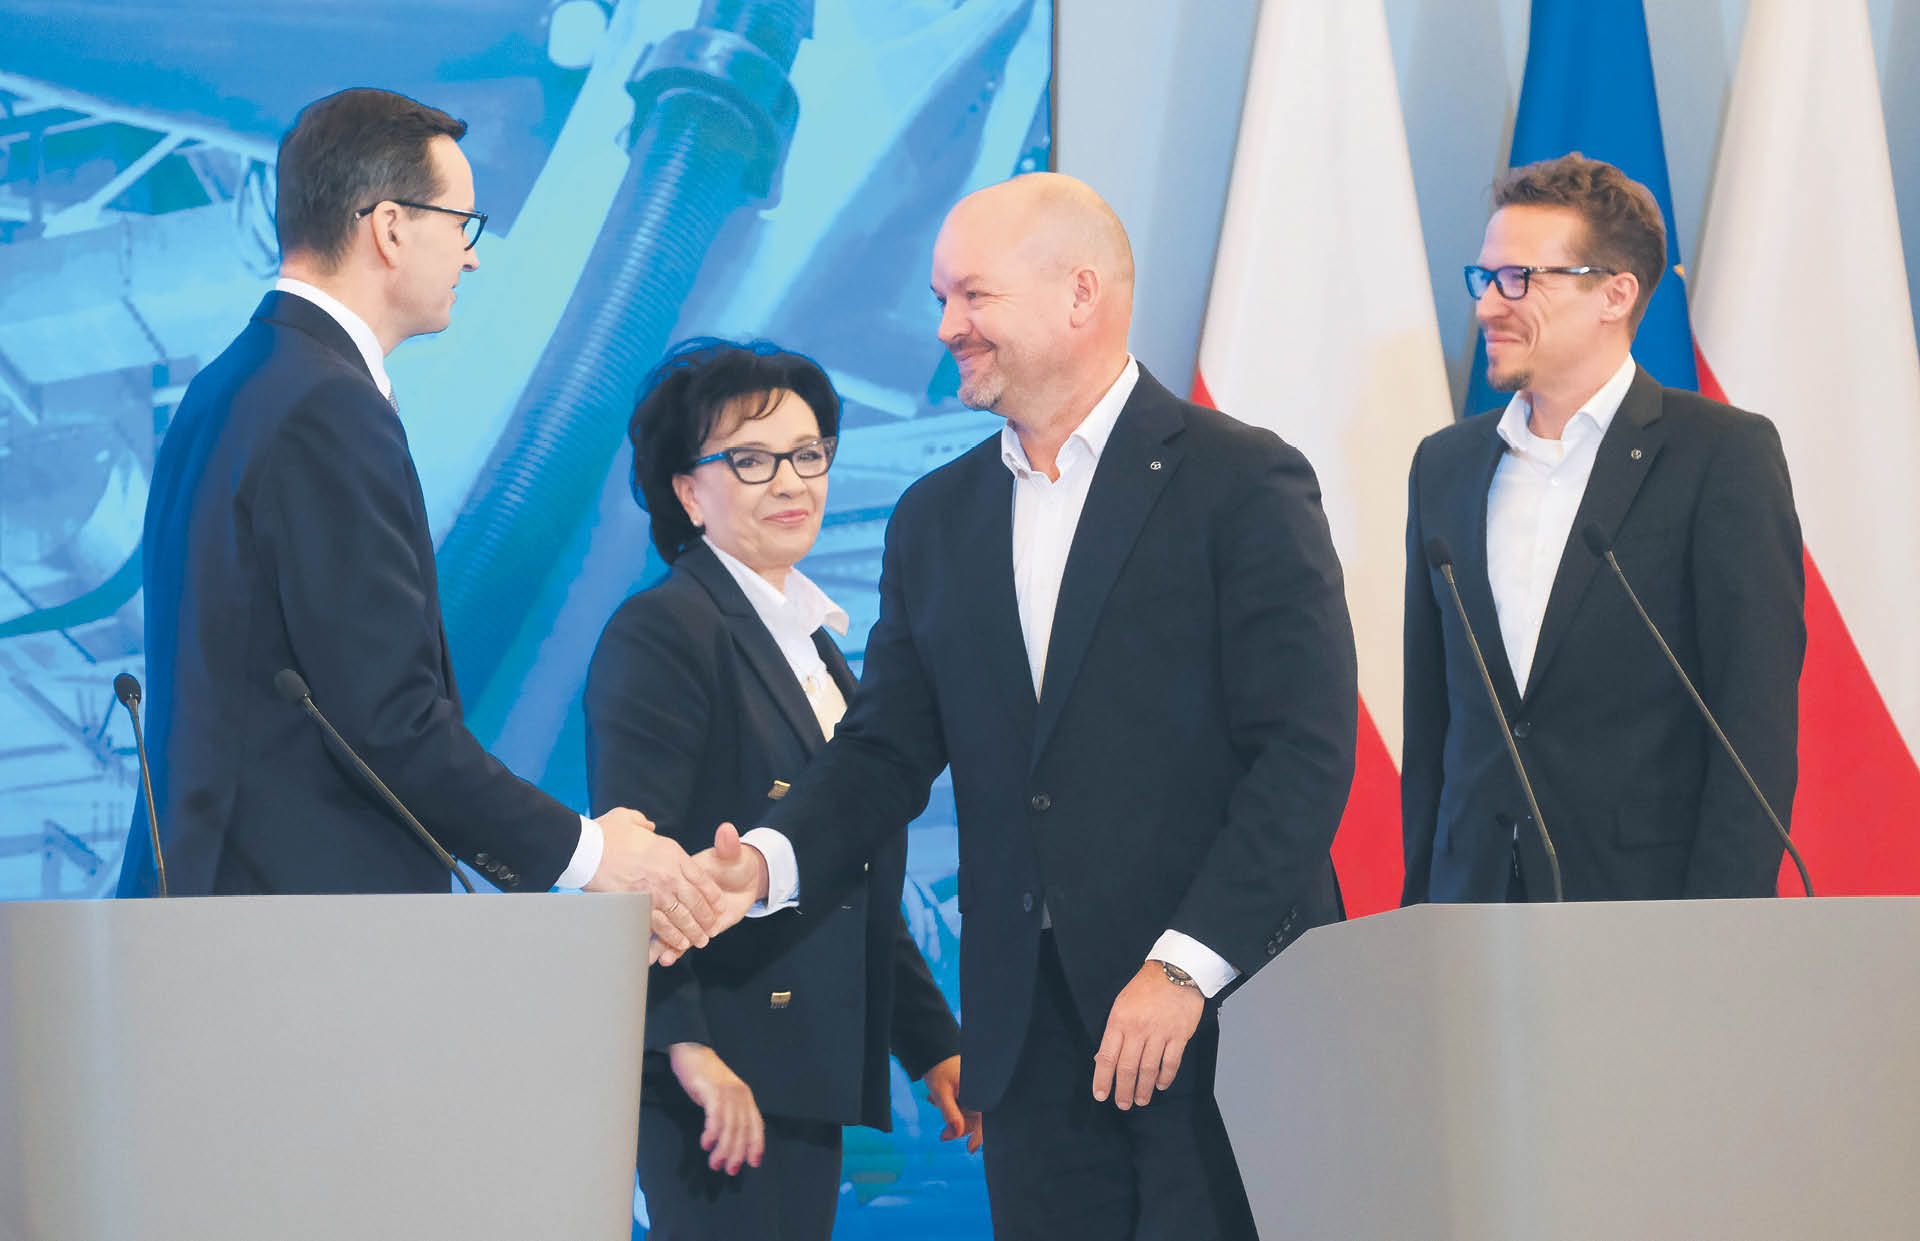 Nowa inwestycja, która jest m.in. efektem rozmów koncernu z polskimi władzami, będzie realizowana w latach 2023–2027